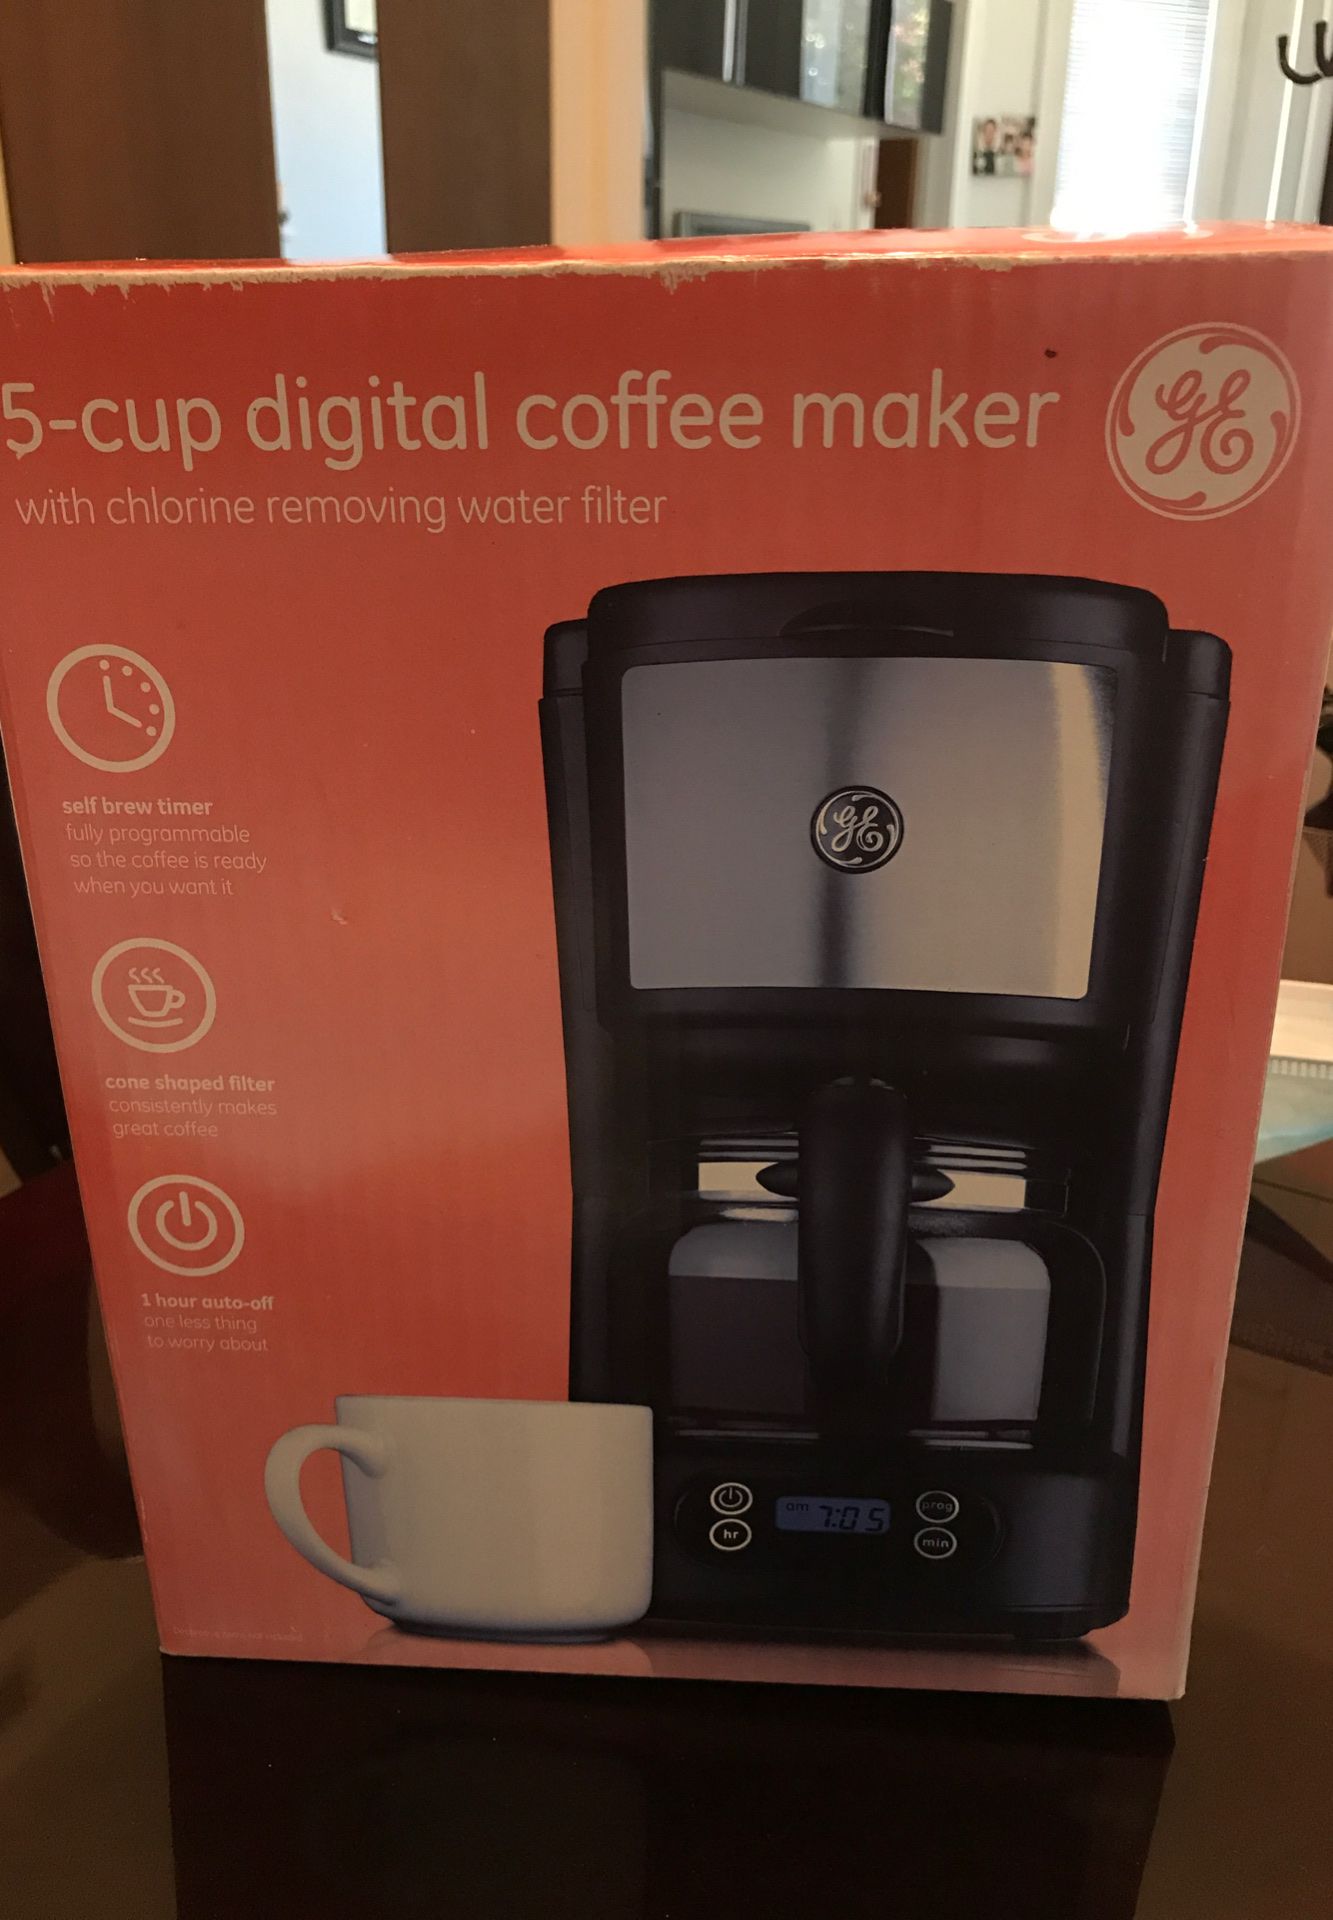 GE digital coffee maker